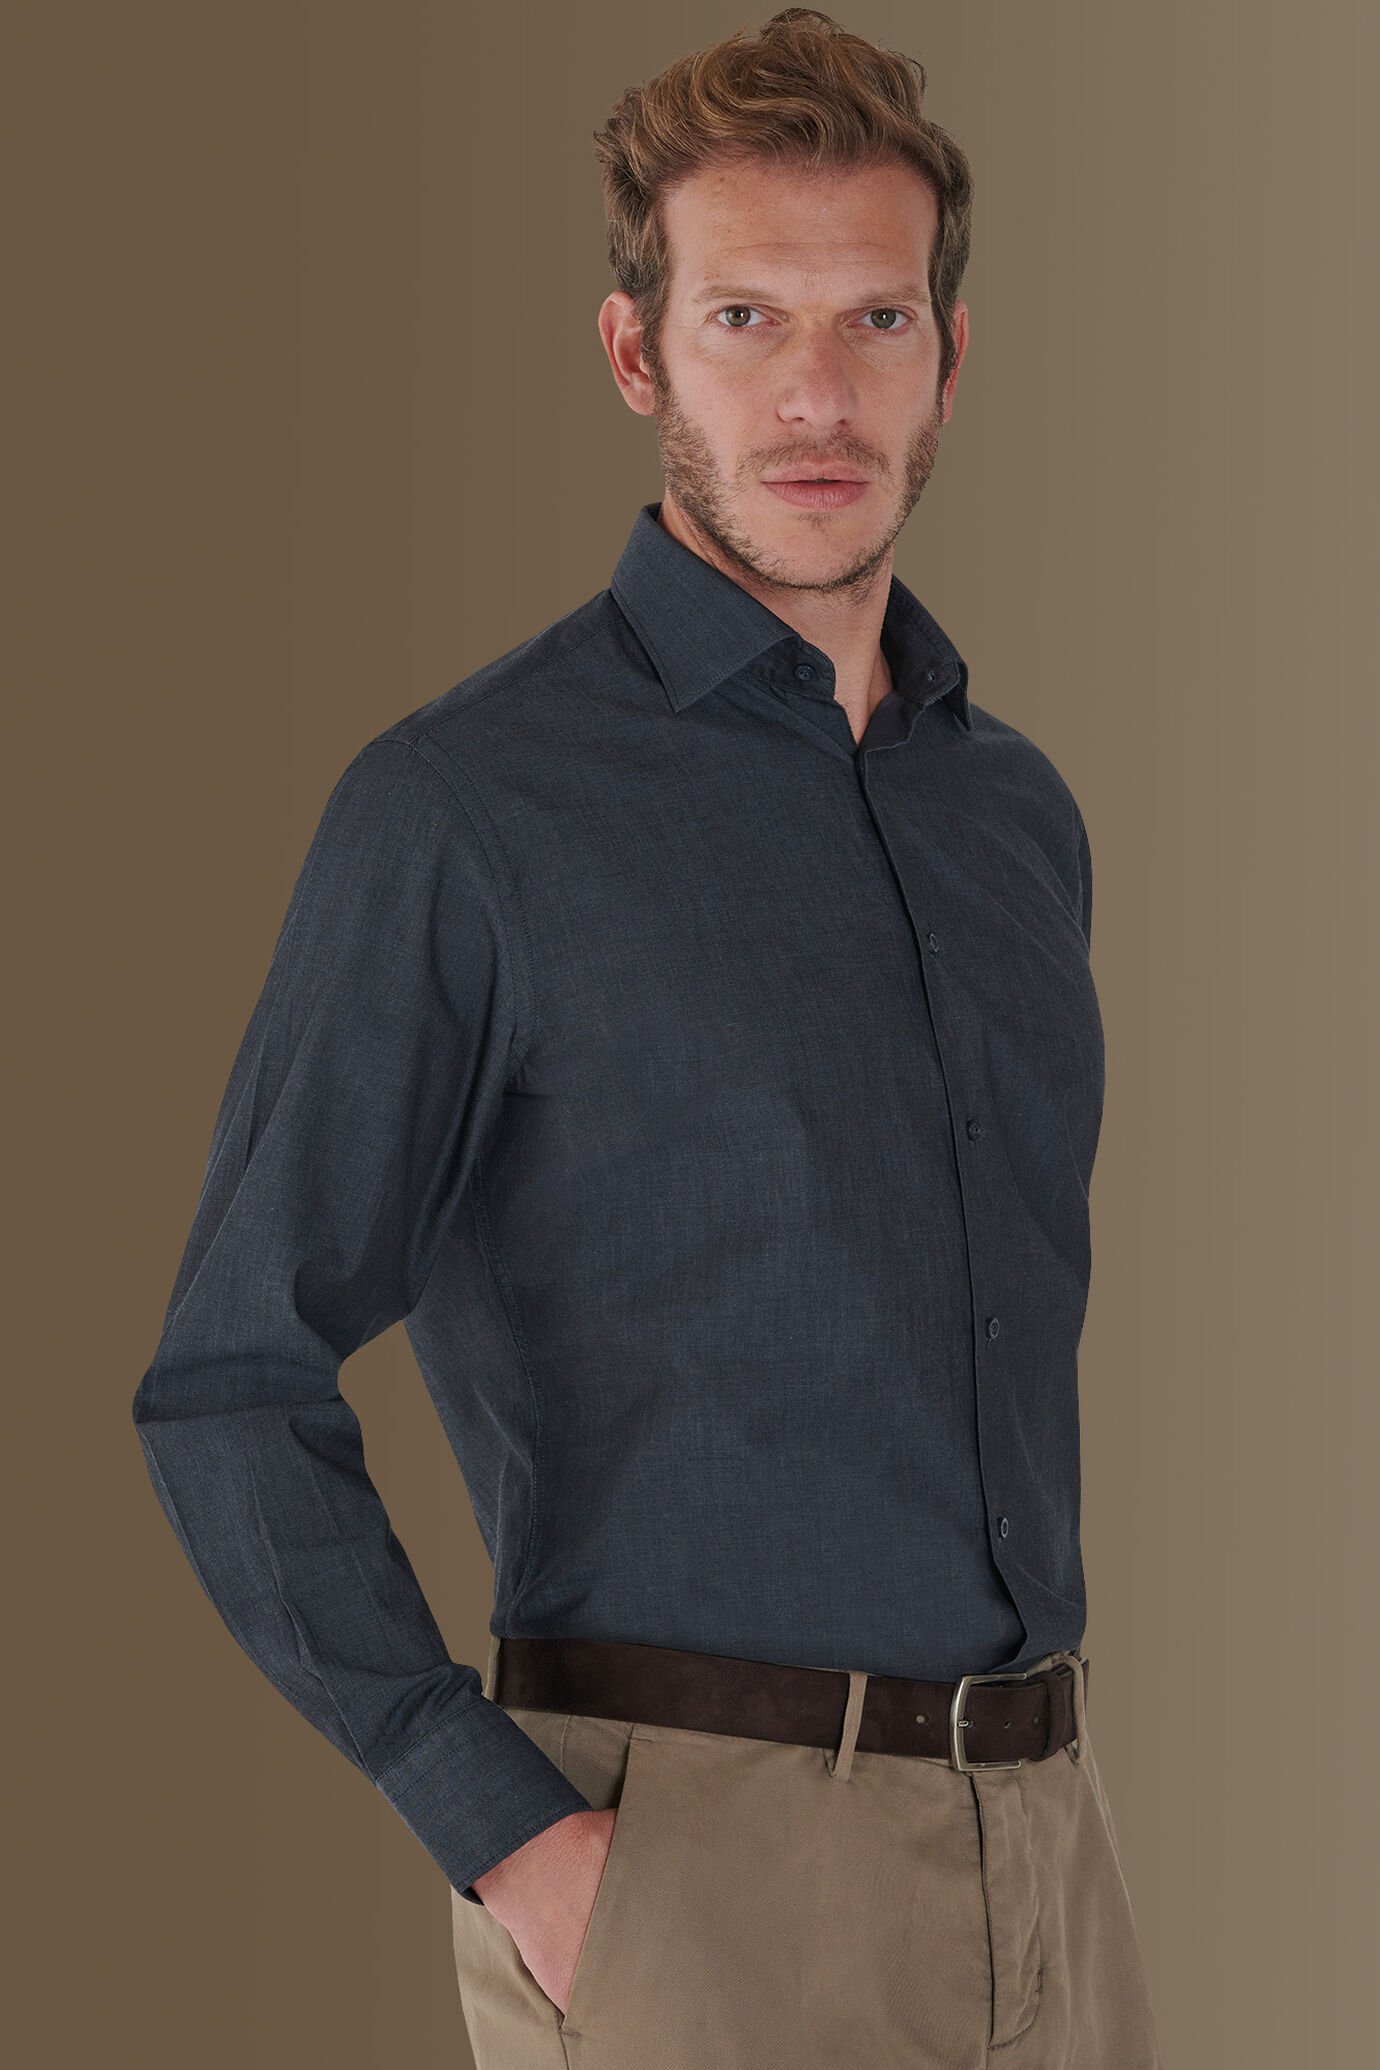 Camicia casual collo francese tinto filo 100% cotone tessuto twill chambray image number 0